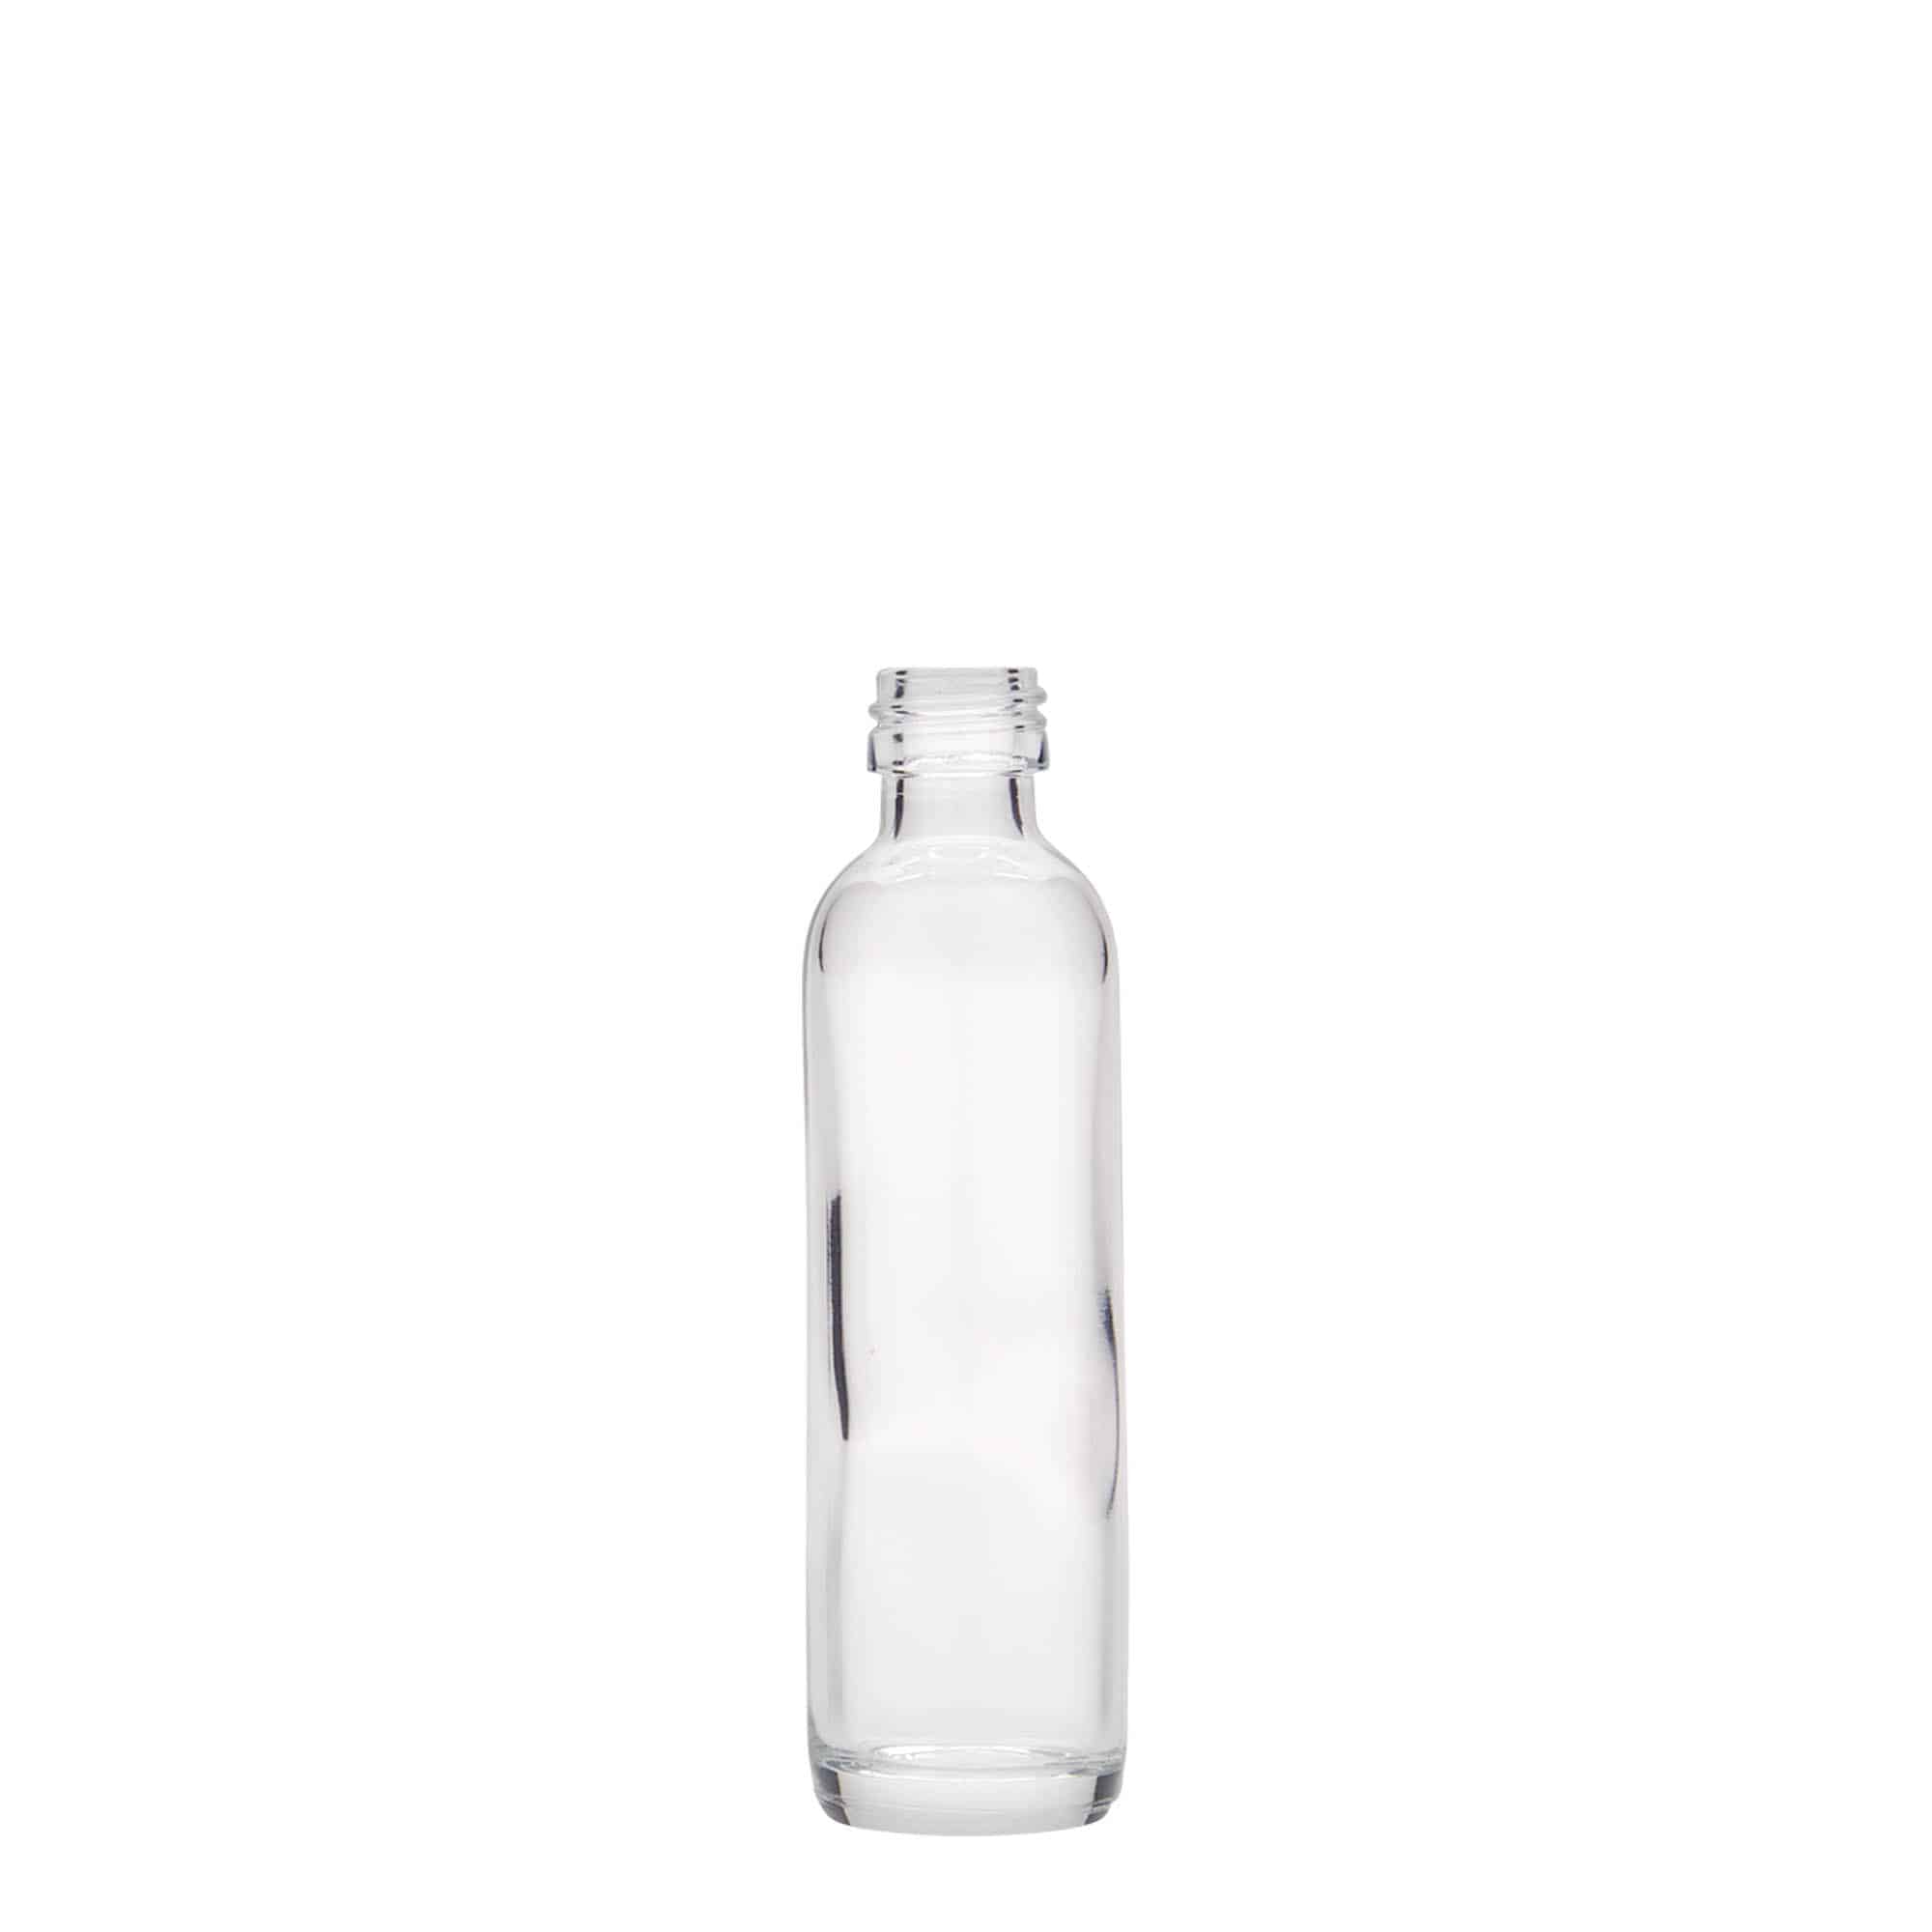 40 ml Krugflasche, Glas, Mündung: PP 18